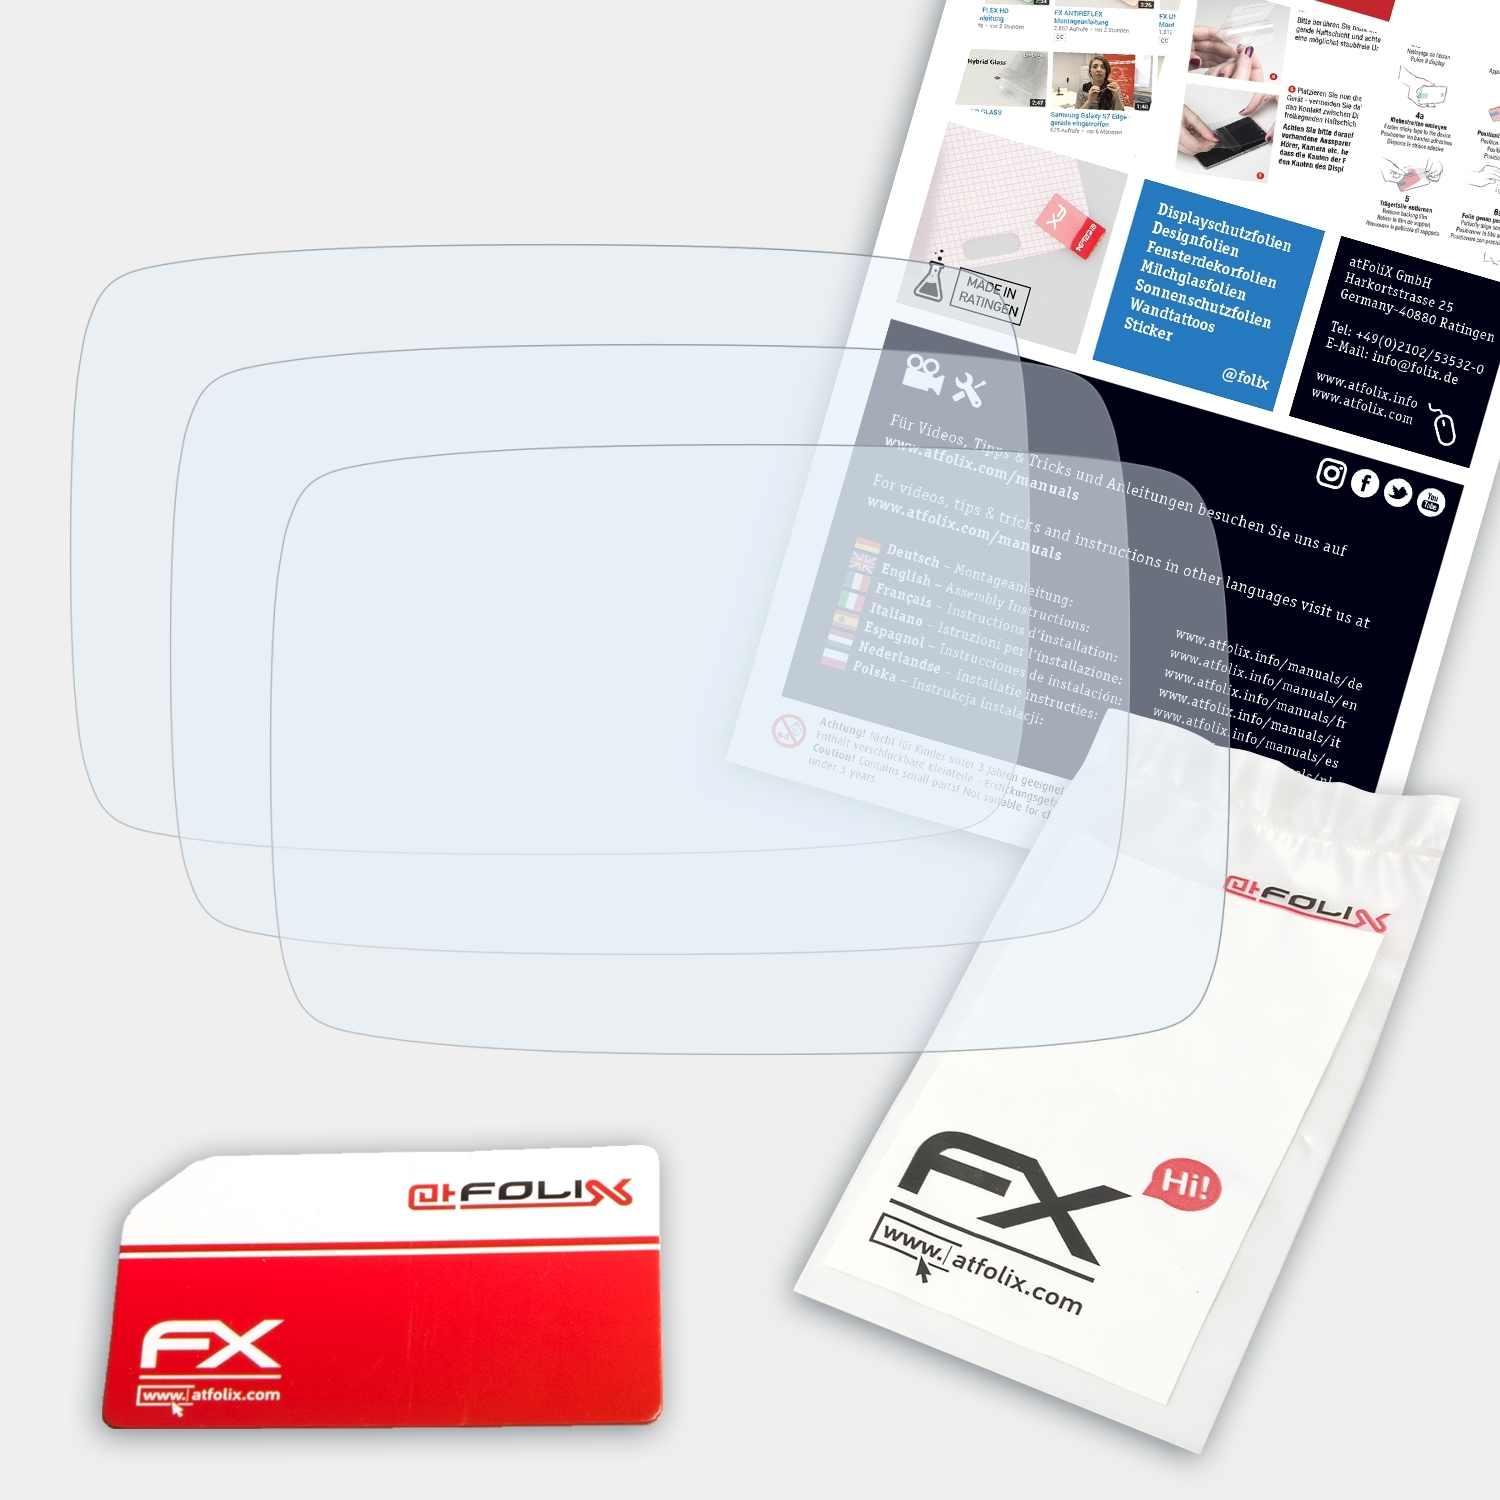 ATFOLIX 3x FX-Clear 6100 610 TomTom / (2015)) Displayschutz(für